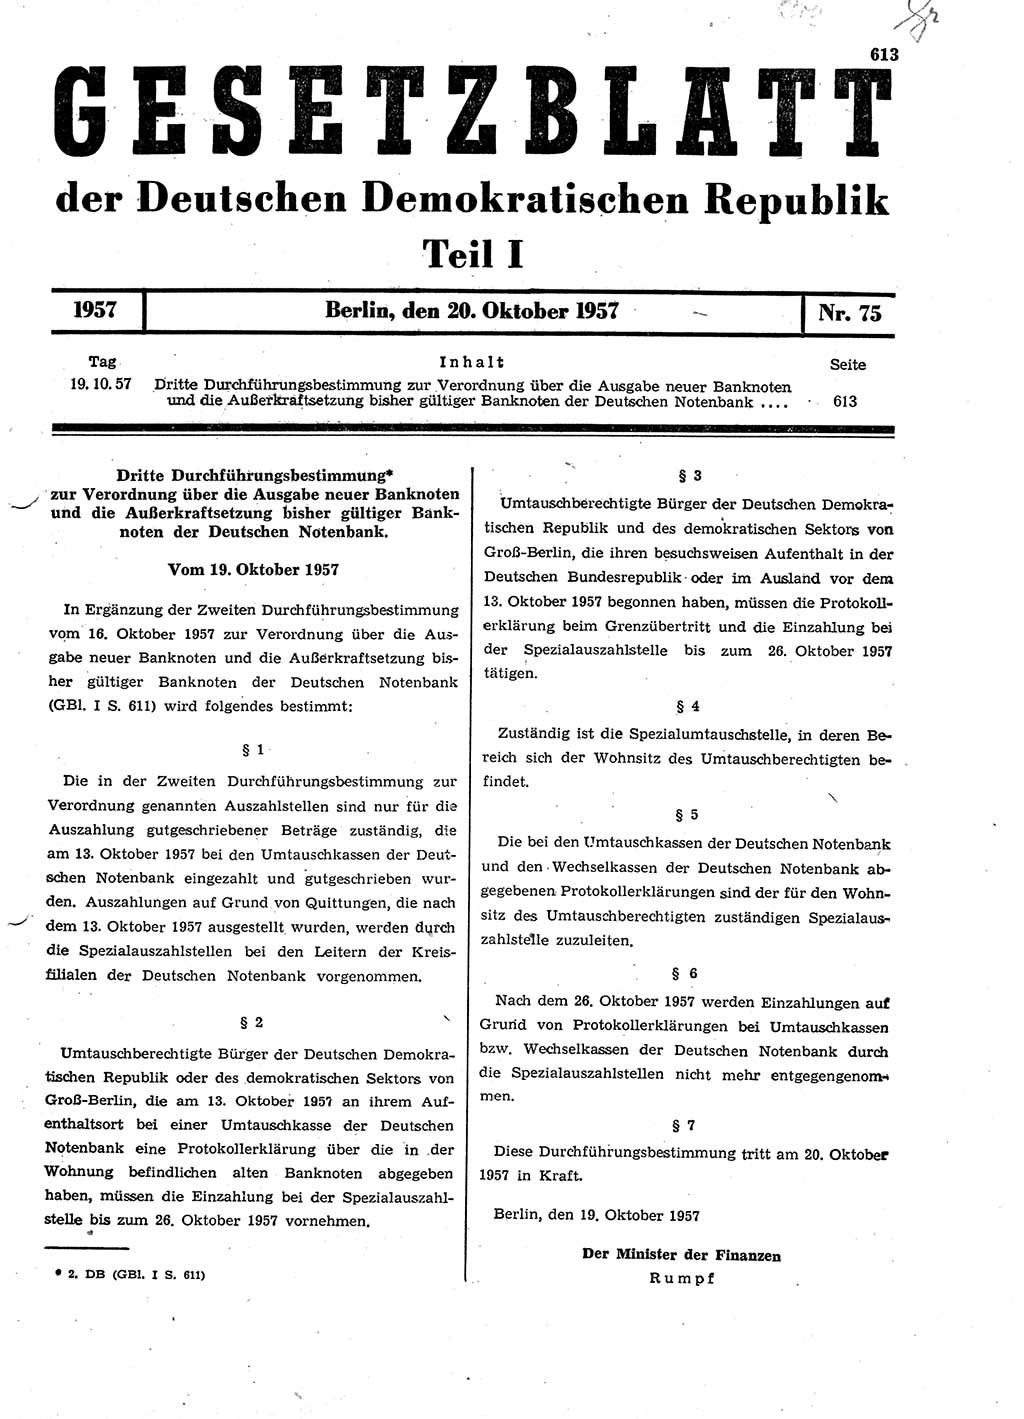 Gesetzblatt (GBl.) der Deutschen Demokratischen Republik (DDR) Teil Ⅰ 1957, Seite 613 (GBl. DDR Ⅰ 1957, S. 613)